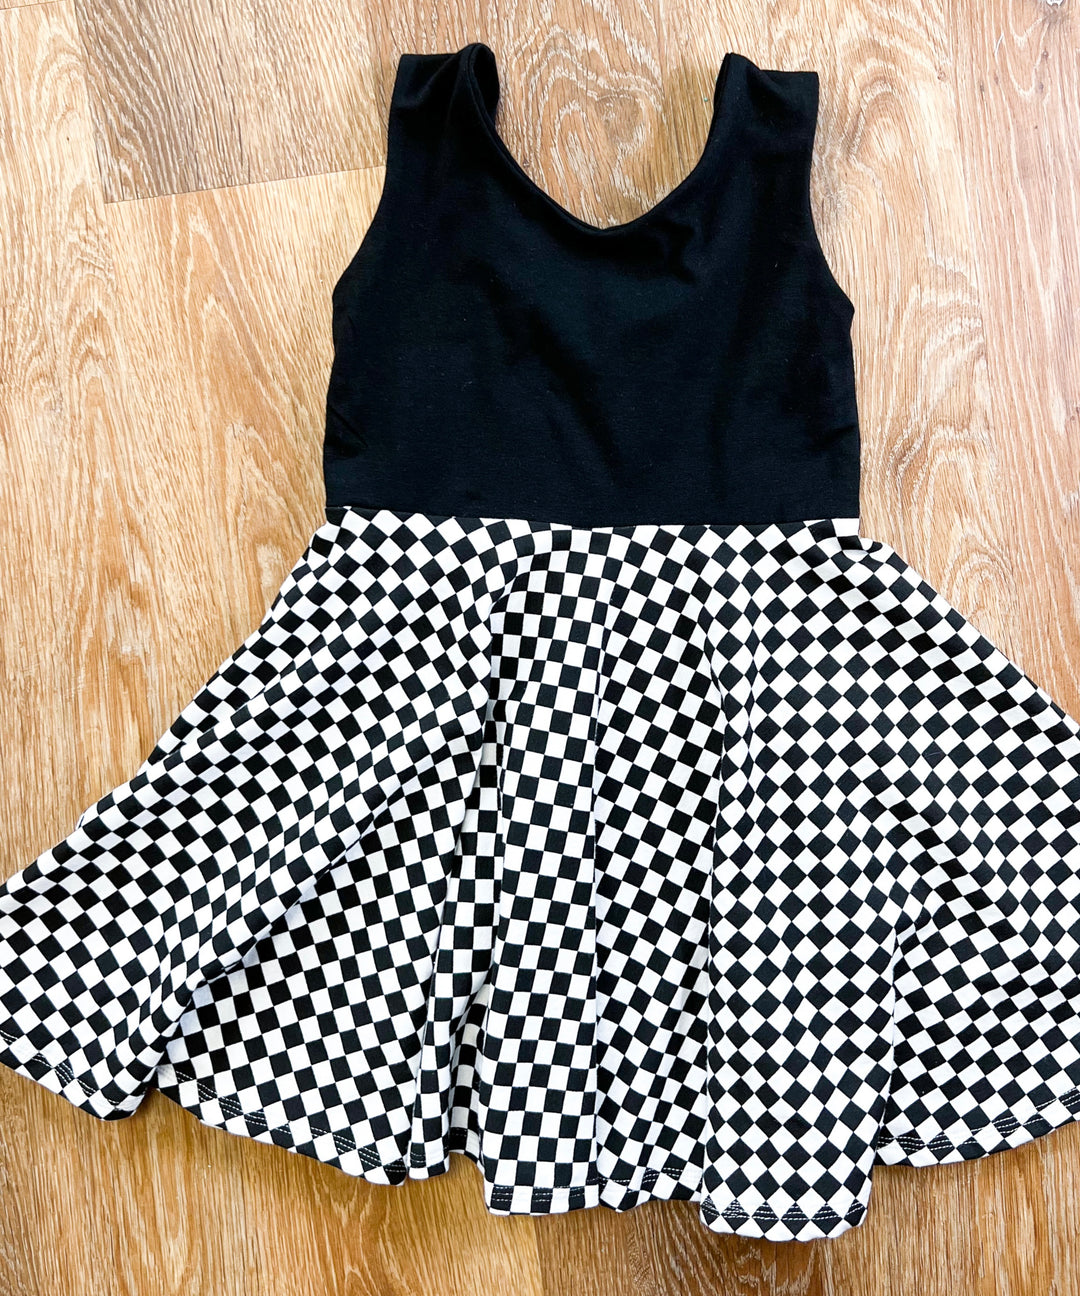 Black & White Check Twirl Dress (Black Top)